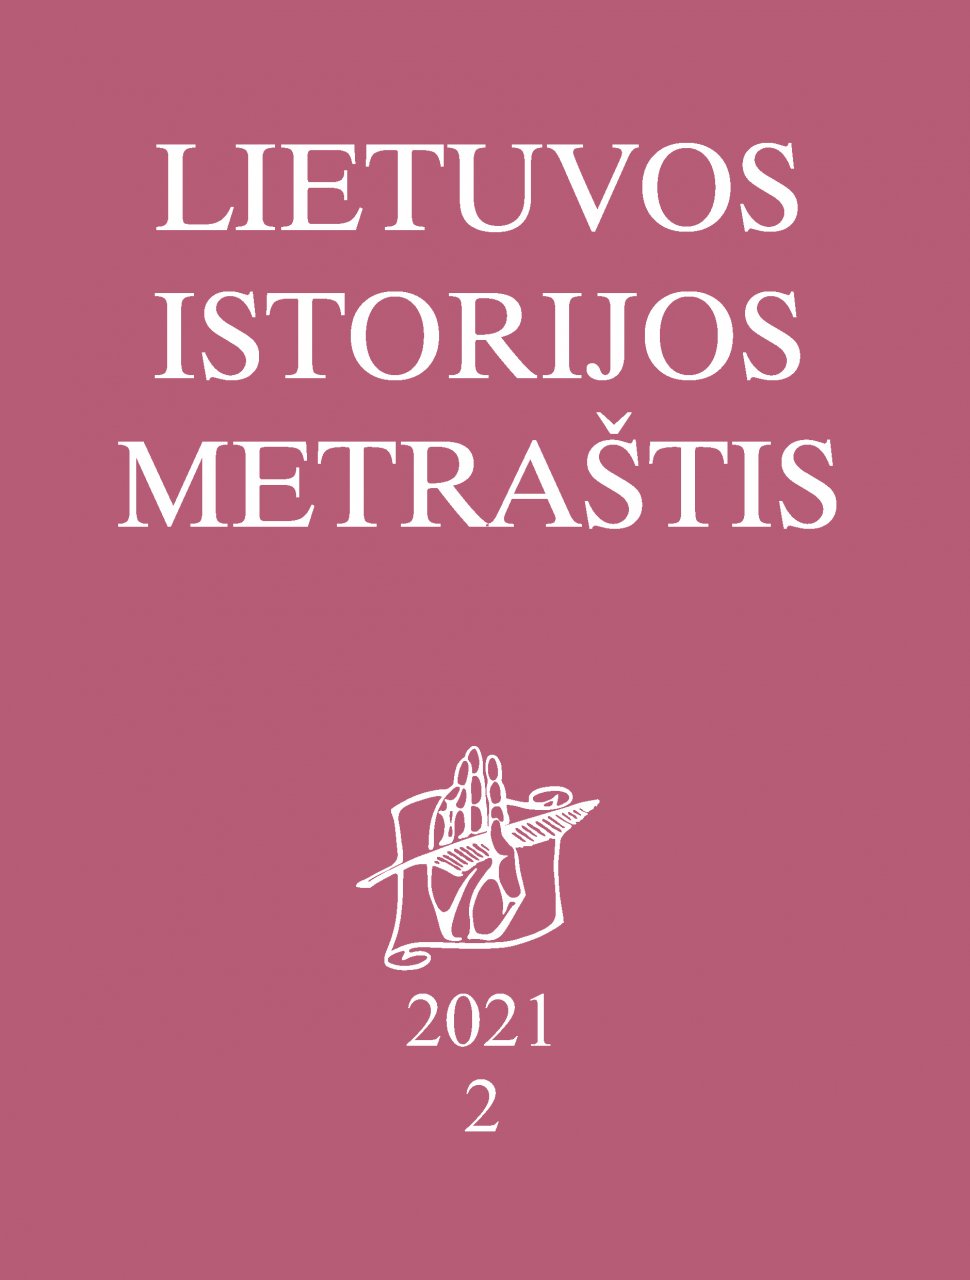 Lietuvos istorijos metraštis 2021 metai 2